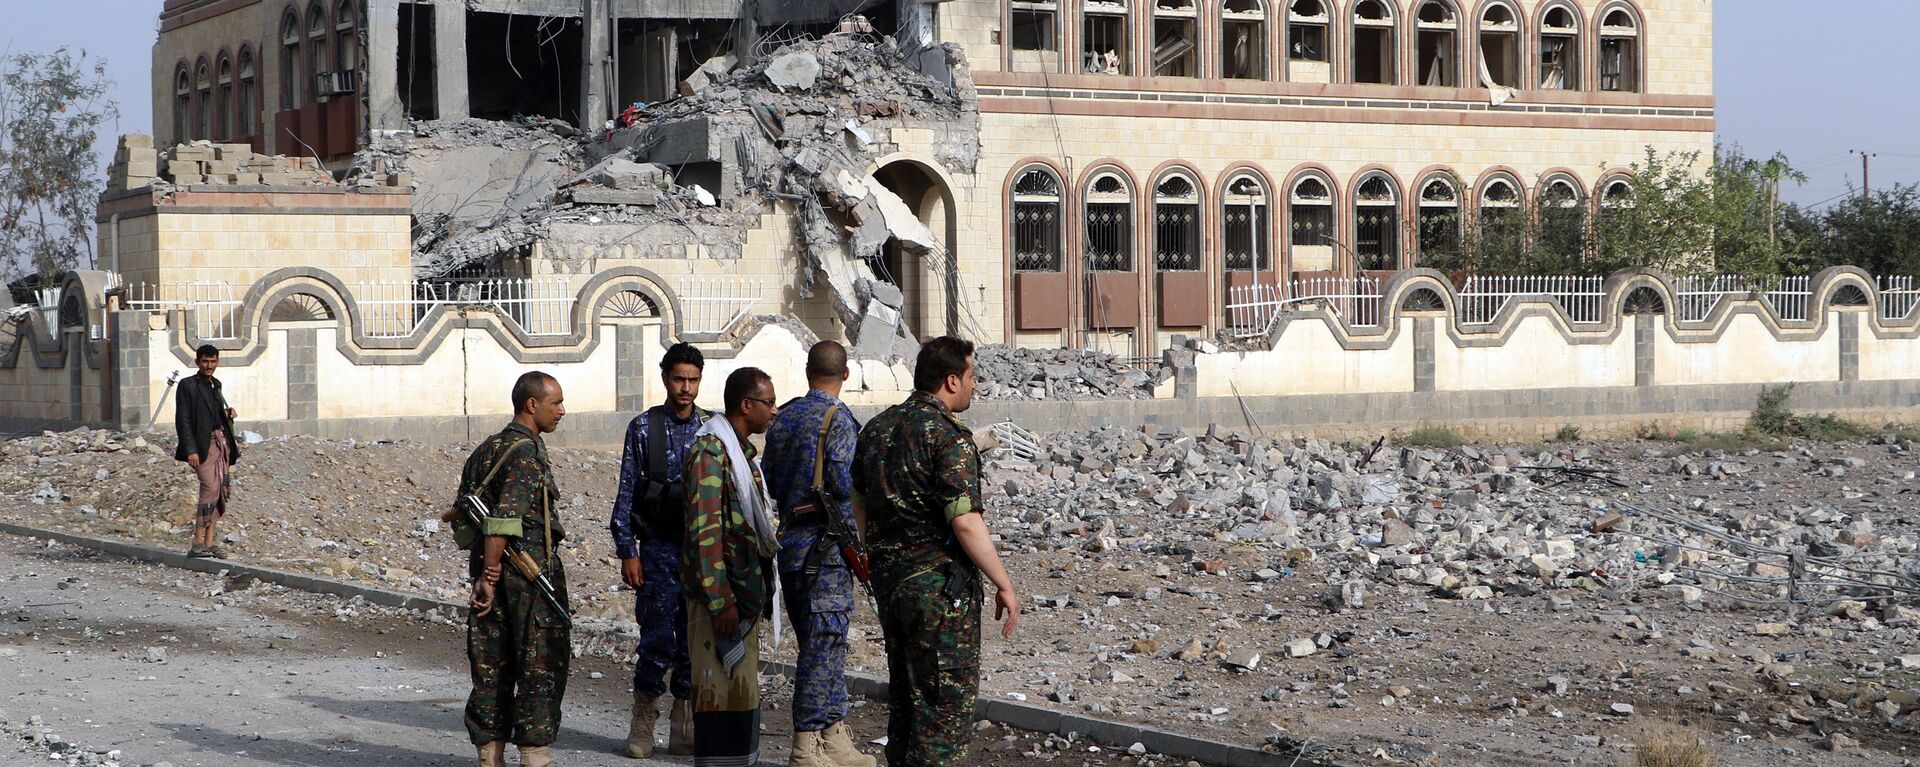 Toà nhà công sở ở thành phố Sa'ada, Yemen bị hư hại do cuộc không kích từ phía Saudi Arabia. - Sputnik Việt Nam, 1920, 23.03.2021